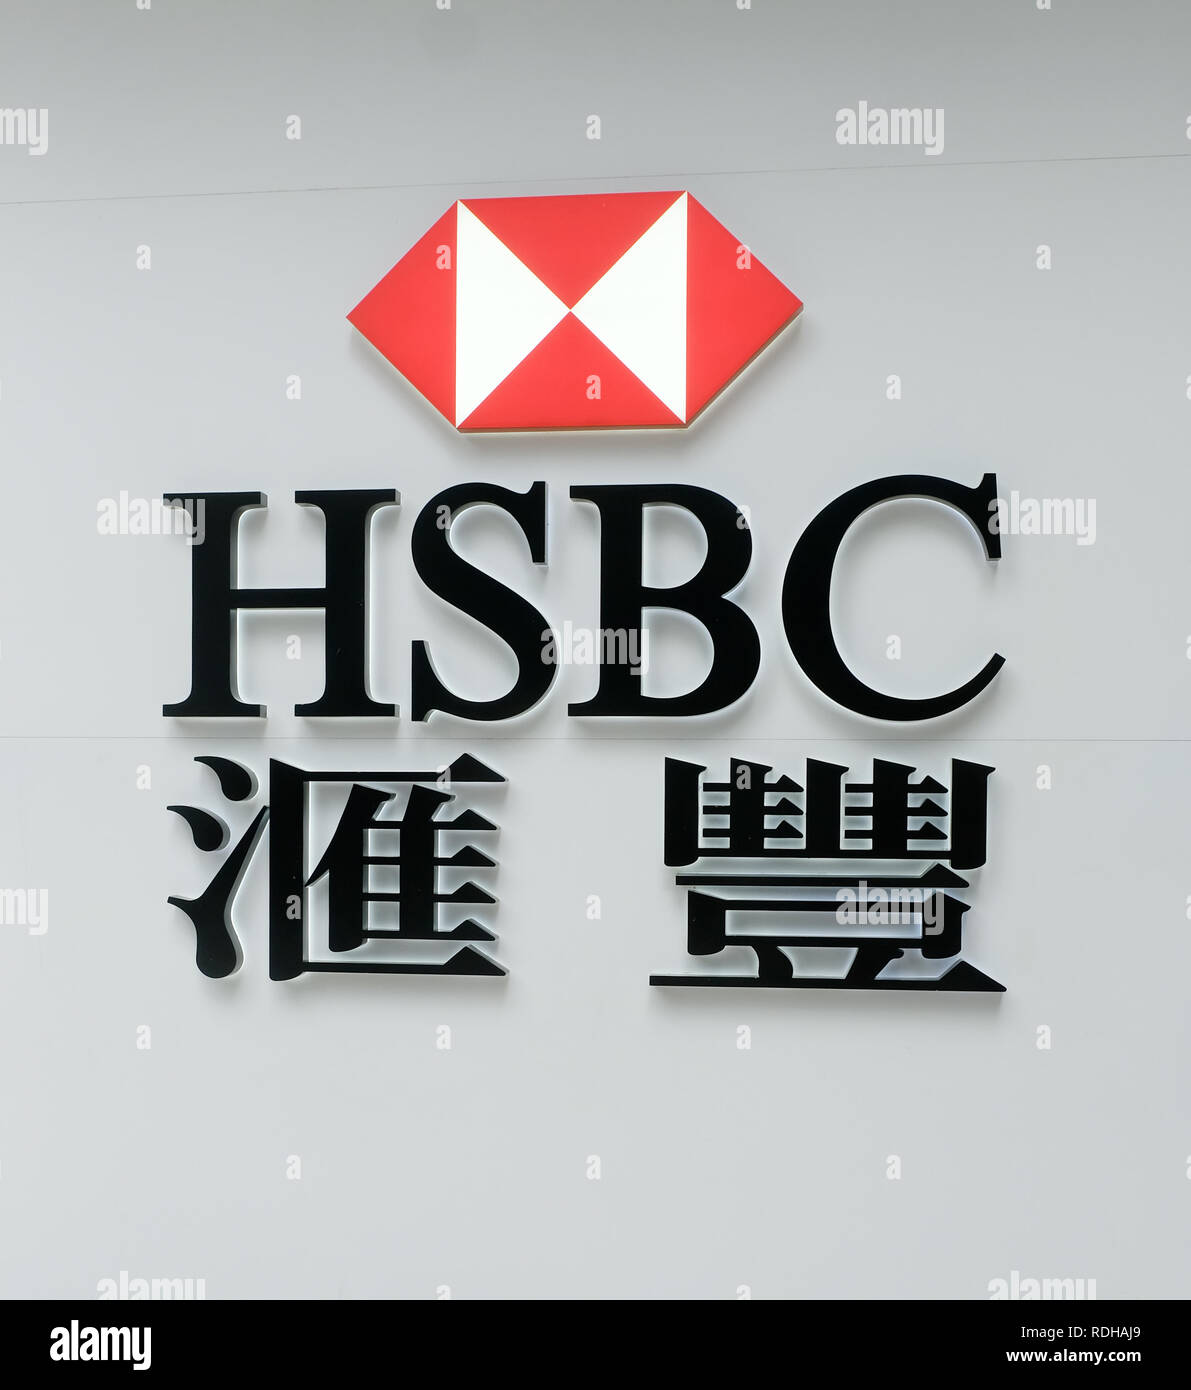 HSBC bank sign, Hong Kong, China Stock Photo